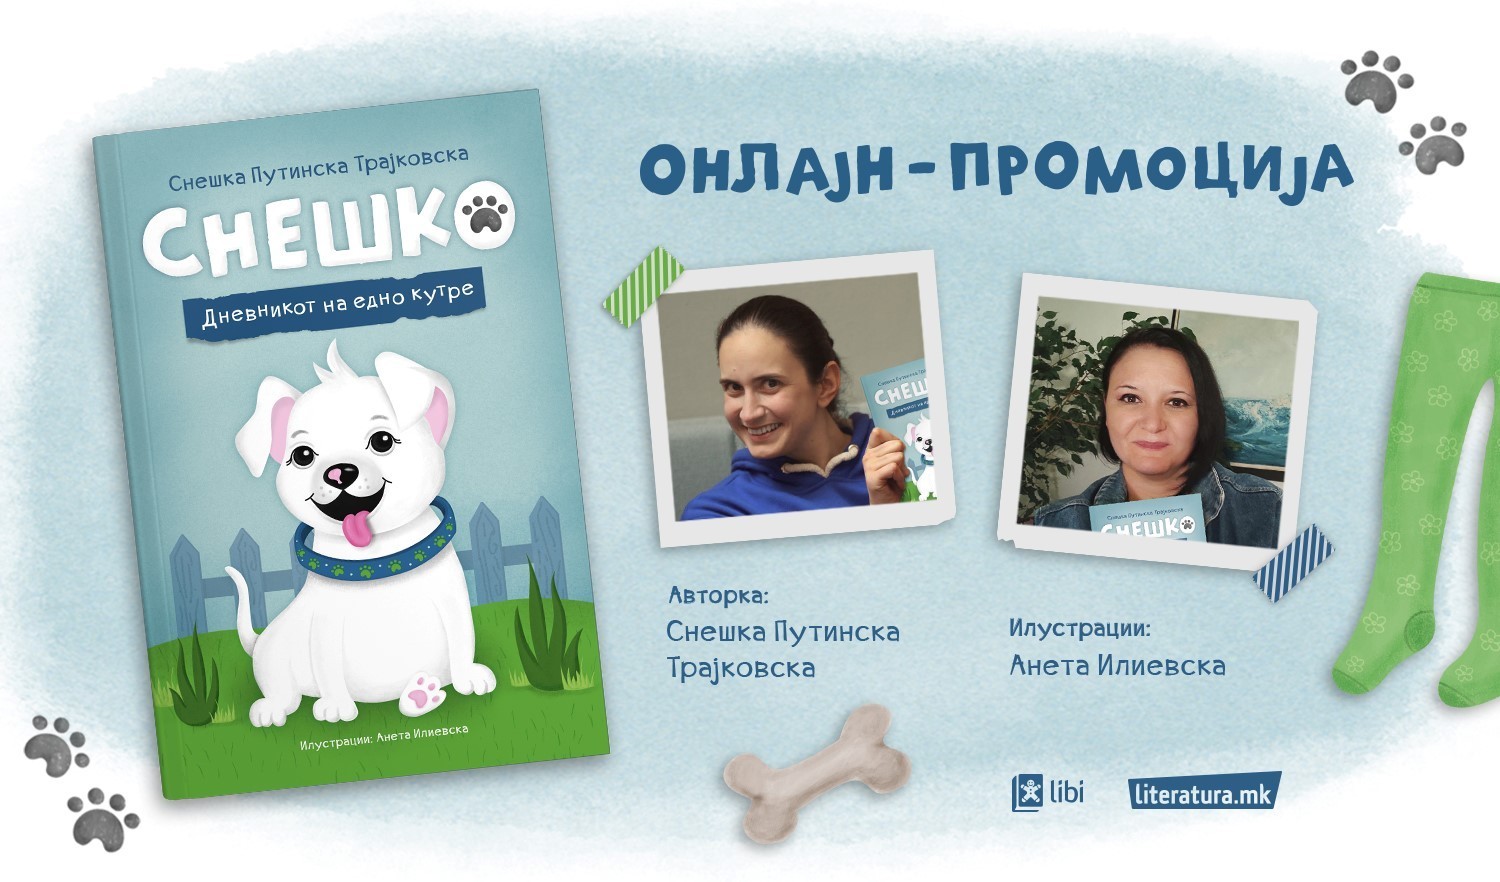 „СНЕШКО. Дневникот на едно кутре“ од Снешка Путинска Трајковска е топла приказна за грижата кон миленичињата